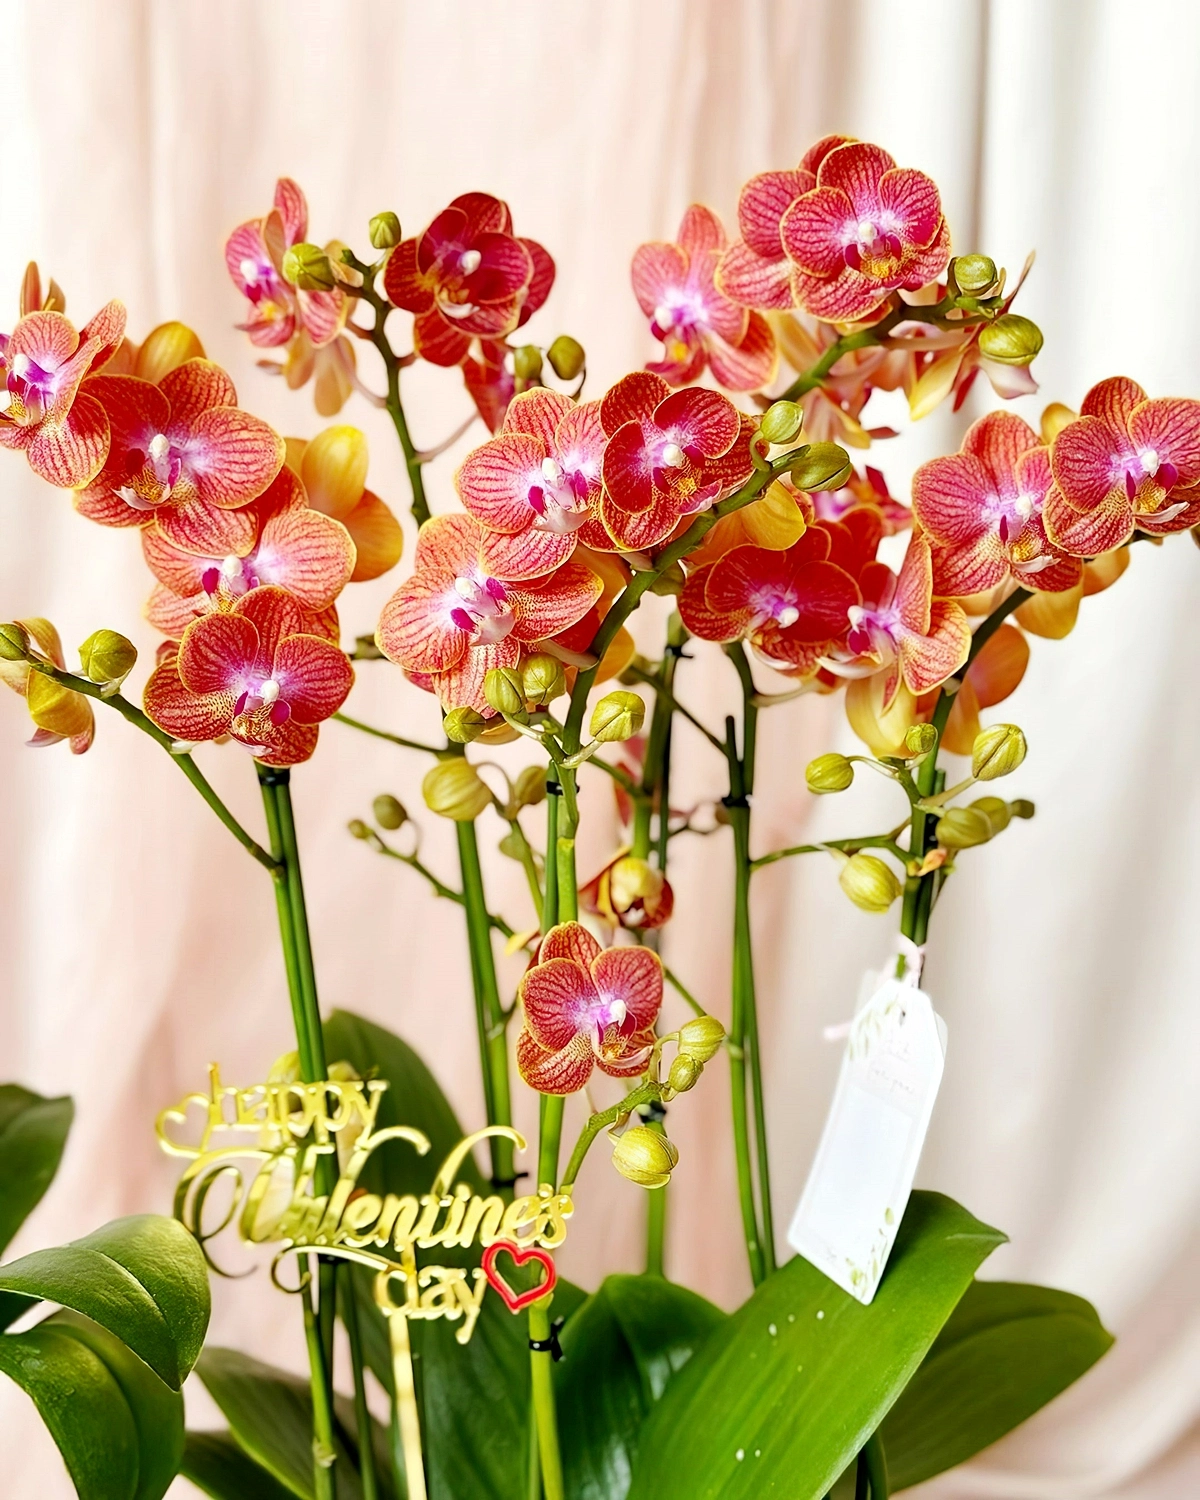 luftwurzeln bei orchideen abschneiden grosse orchidee mit vielen bueten primeraorchid